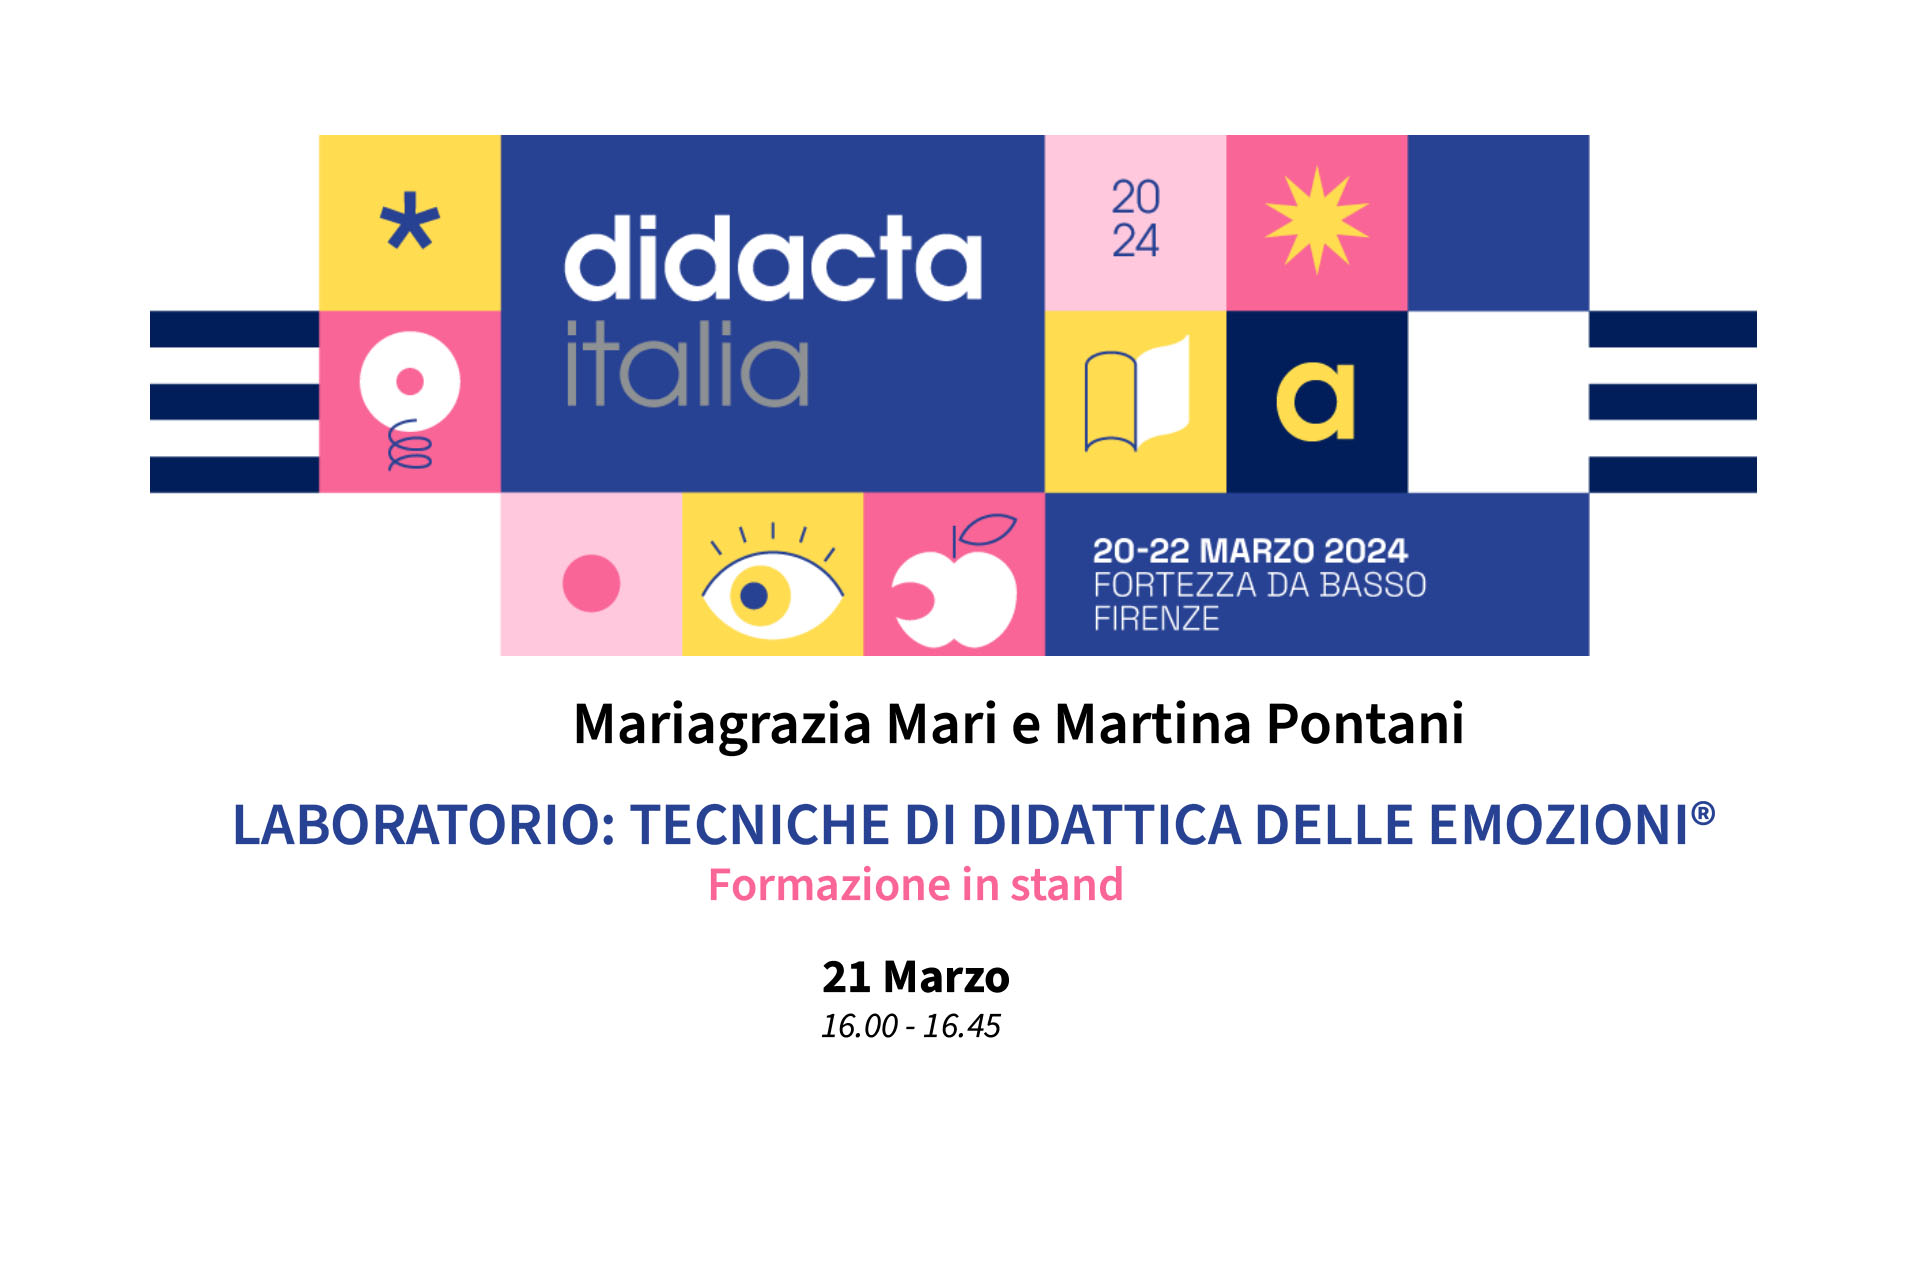 Didacta Italia 2024: Laboratorio: Tecniche di Didattica delle EmozioniLaboratorio: Tecniche di Didattica delle Emozioni®